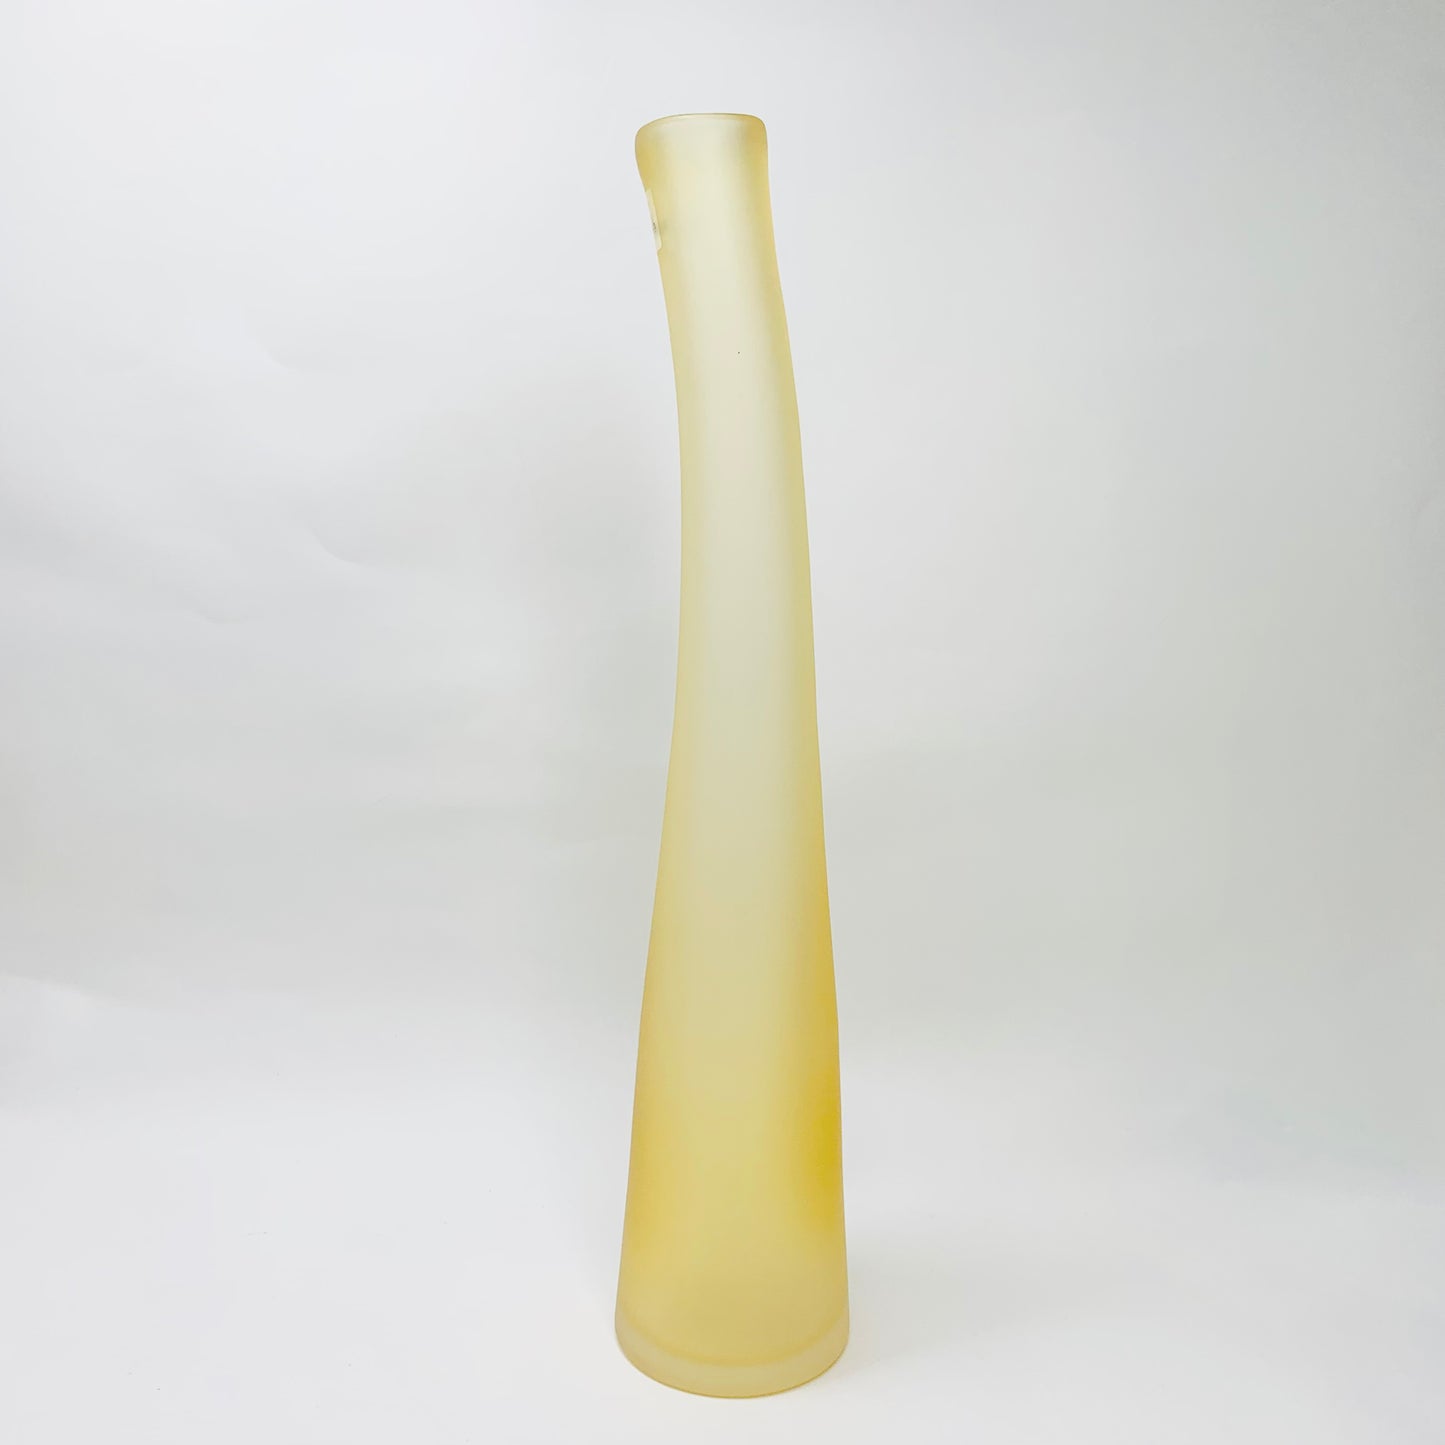 Rare vintage Villeroy & Boch slanted amber satin glass bottle vase